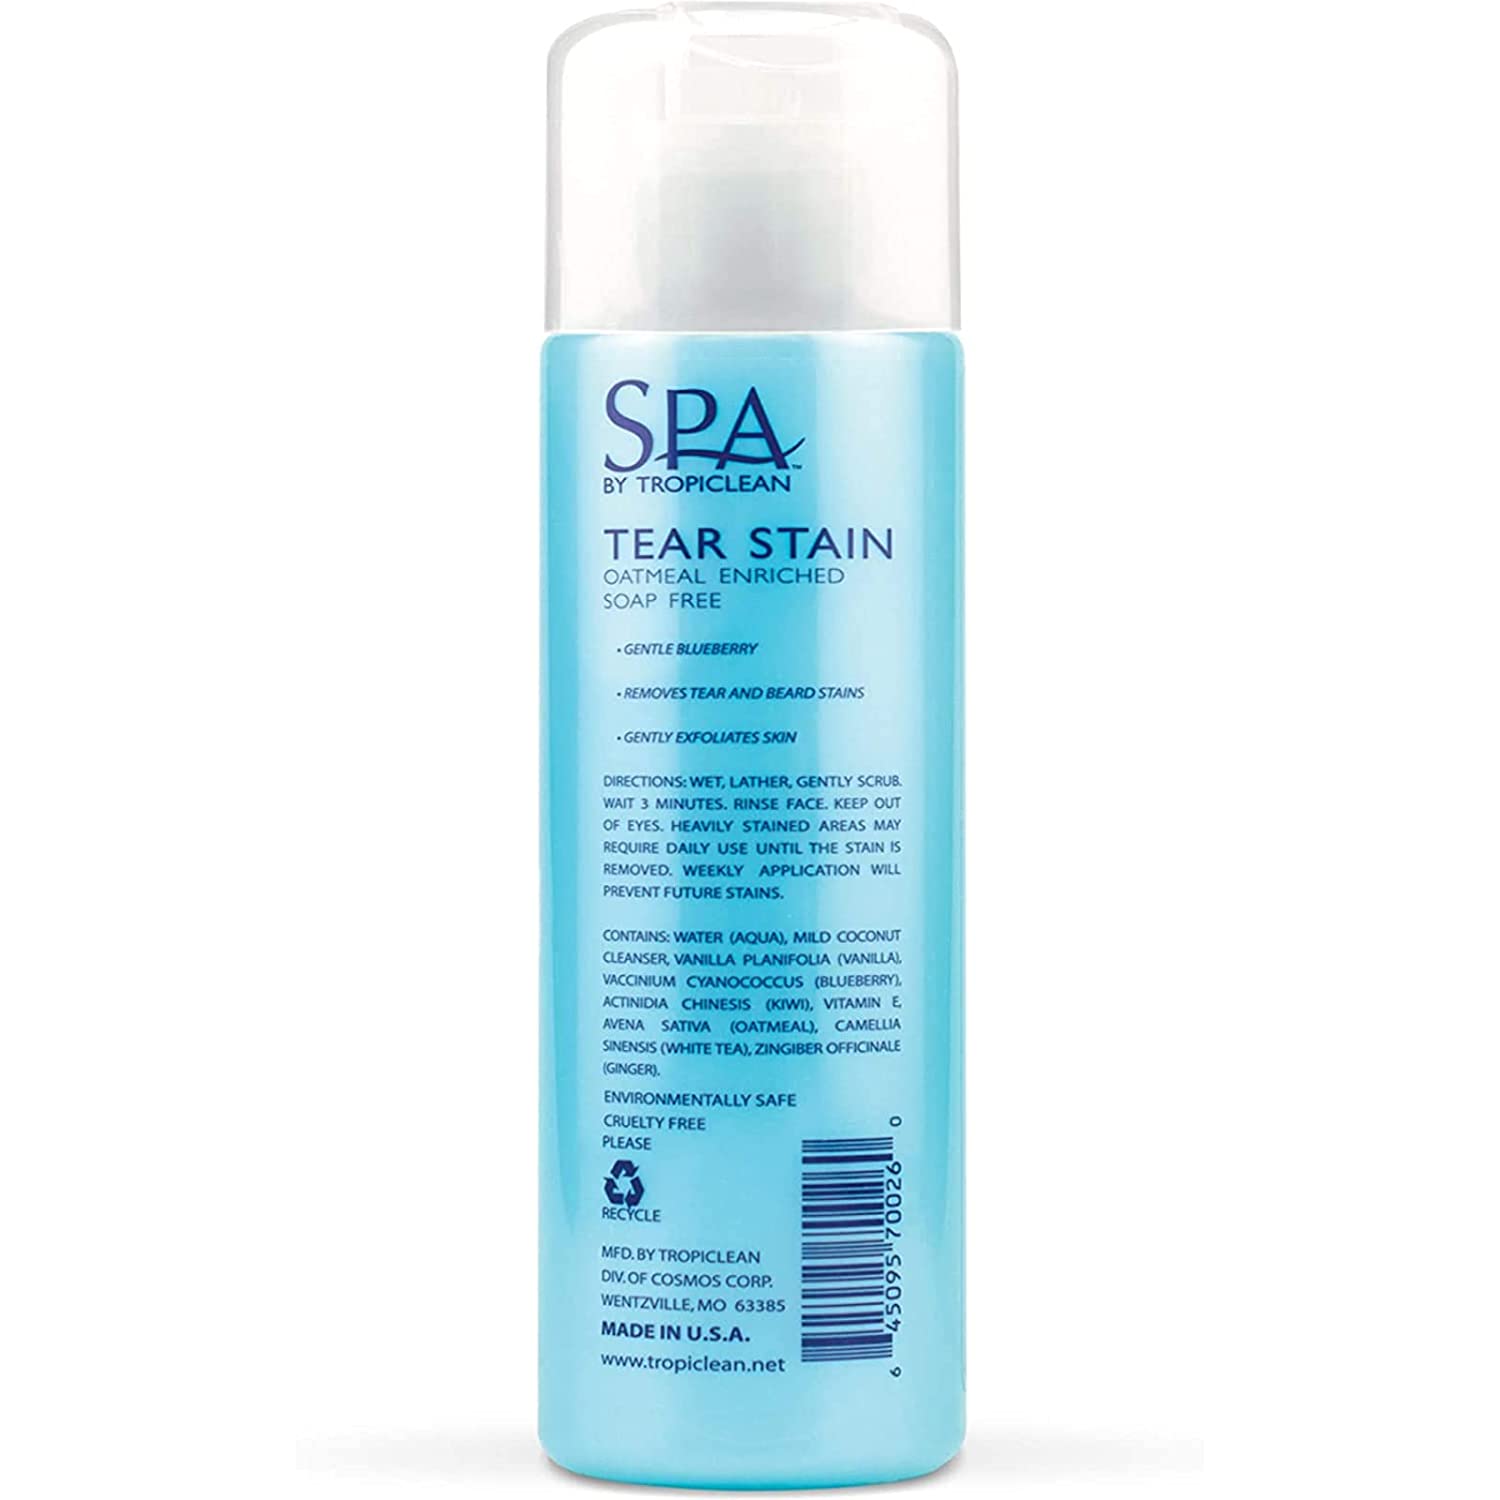 Tropiclean SPA Tear Stain Facial Cleanser - 236 ml